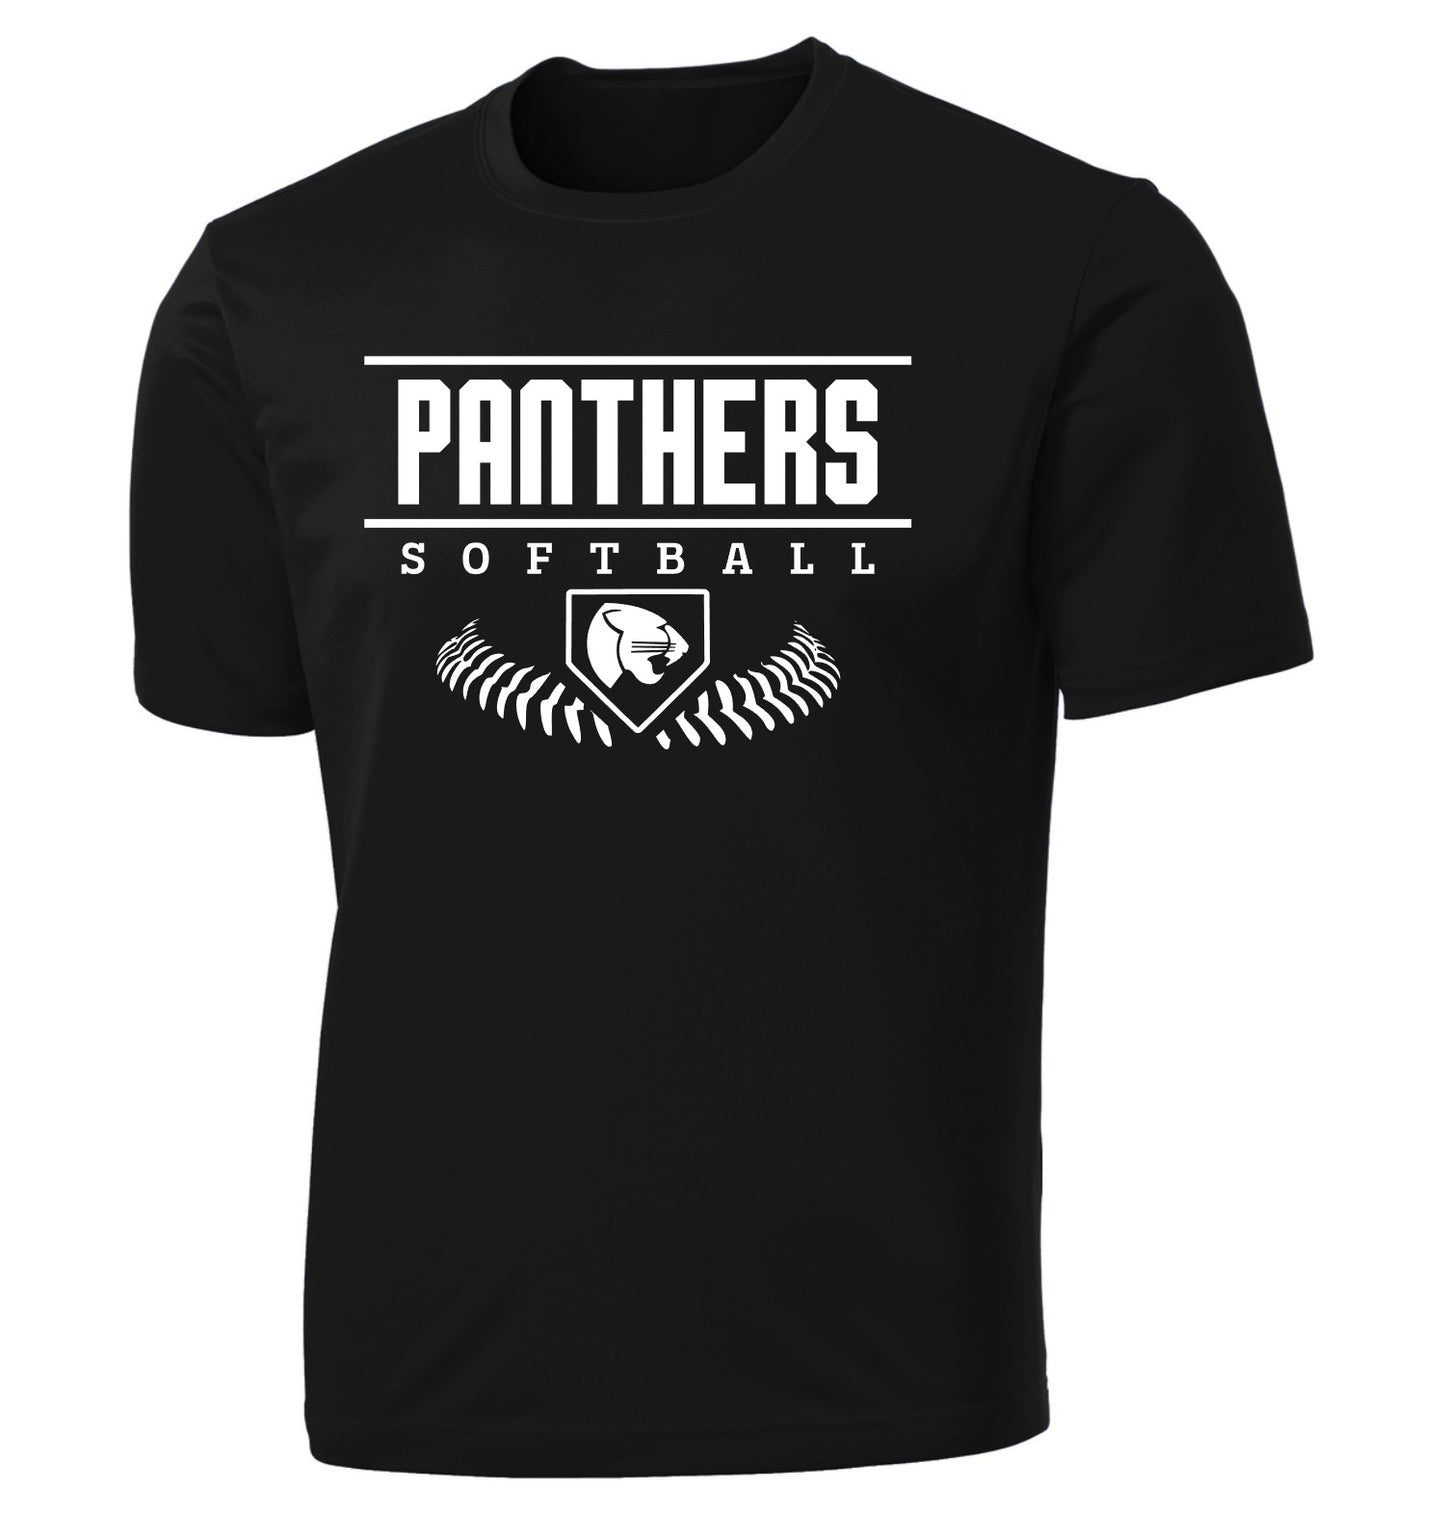 Panthers Softball